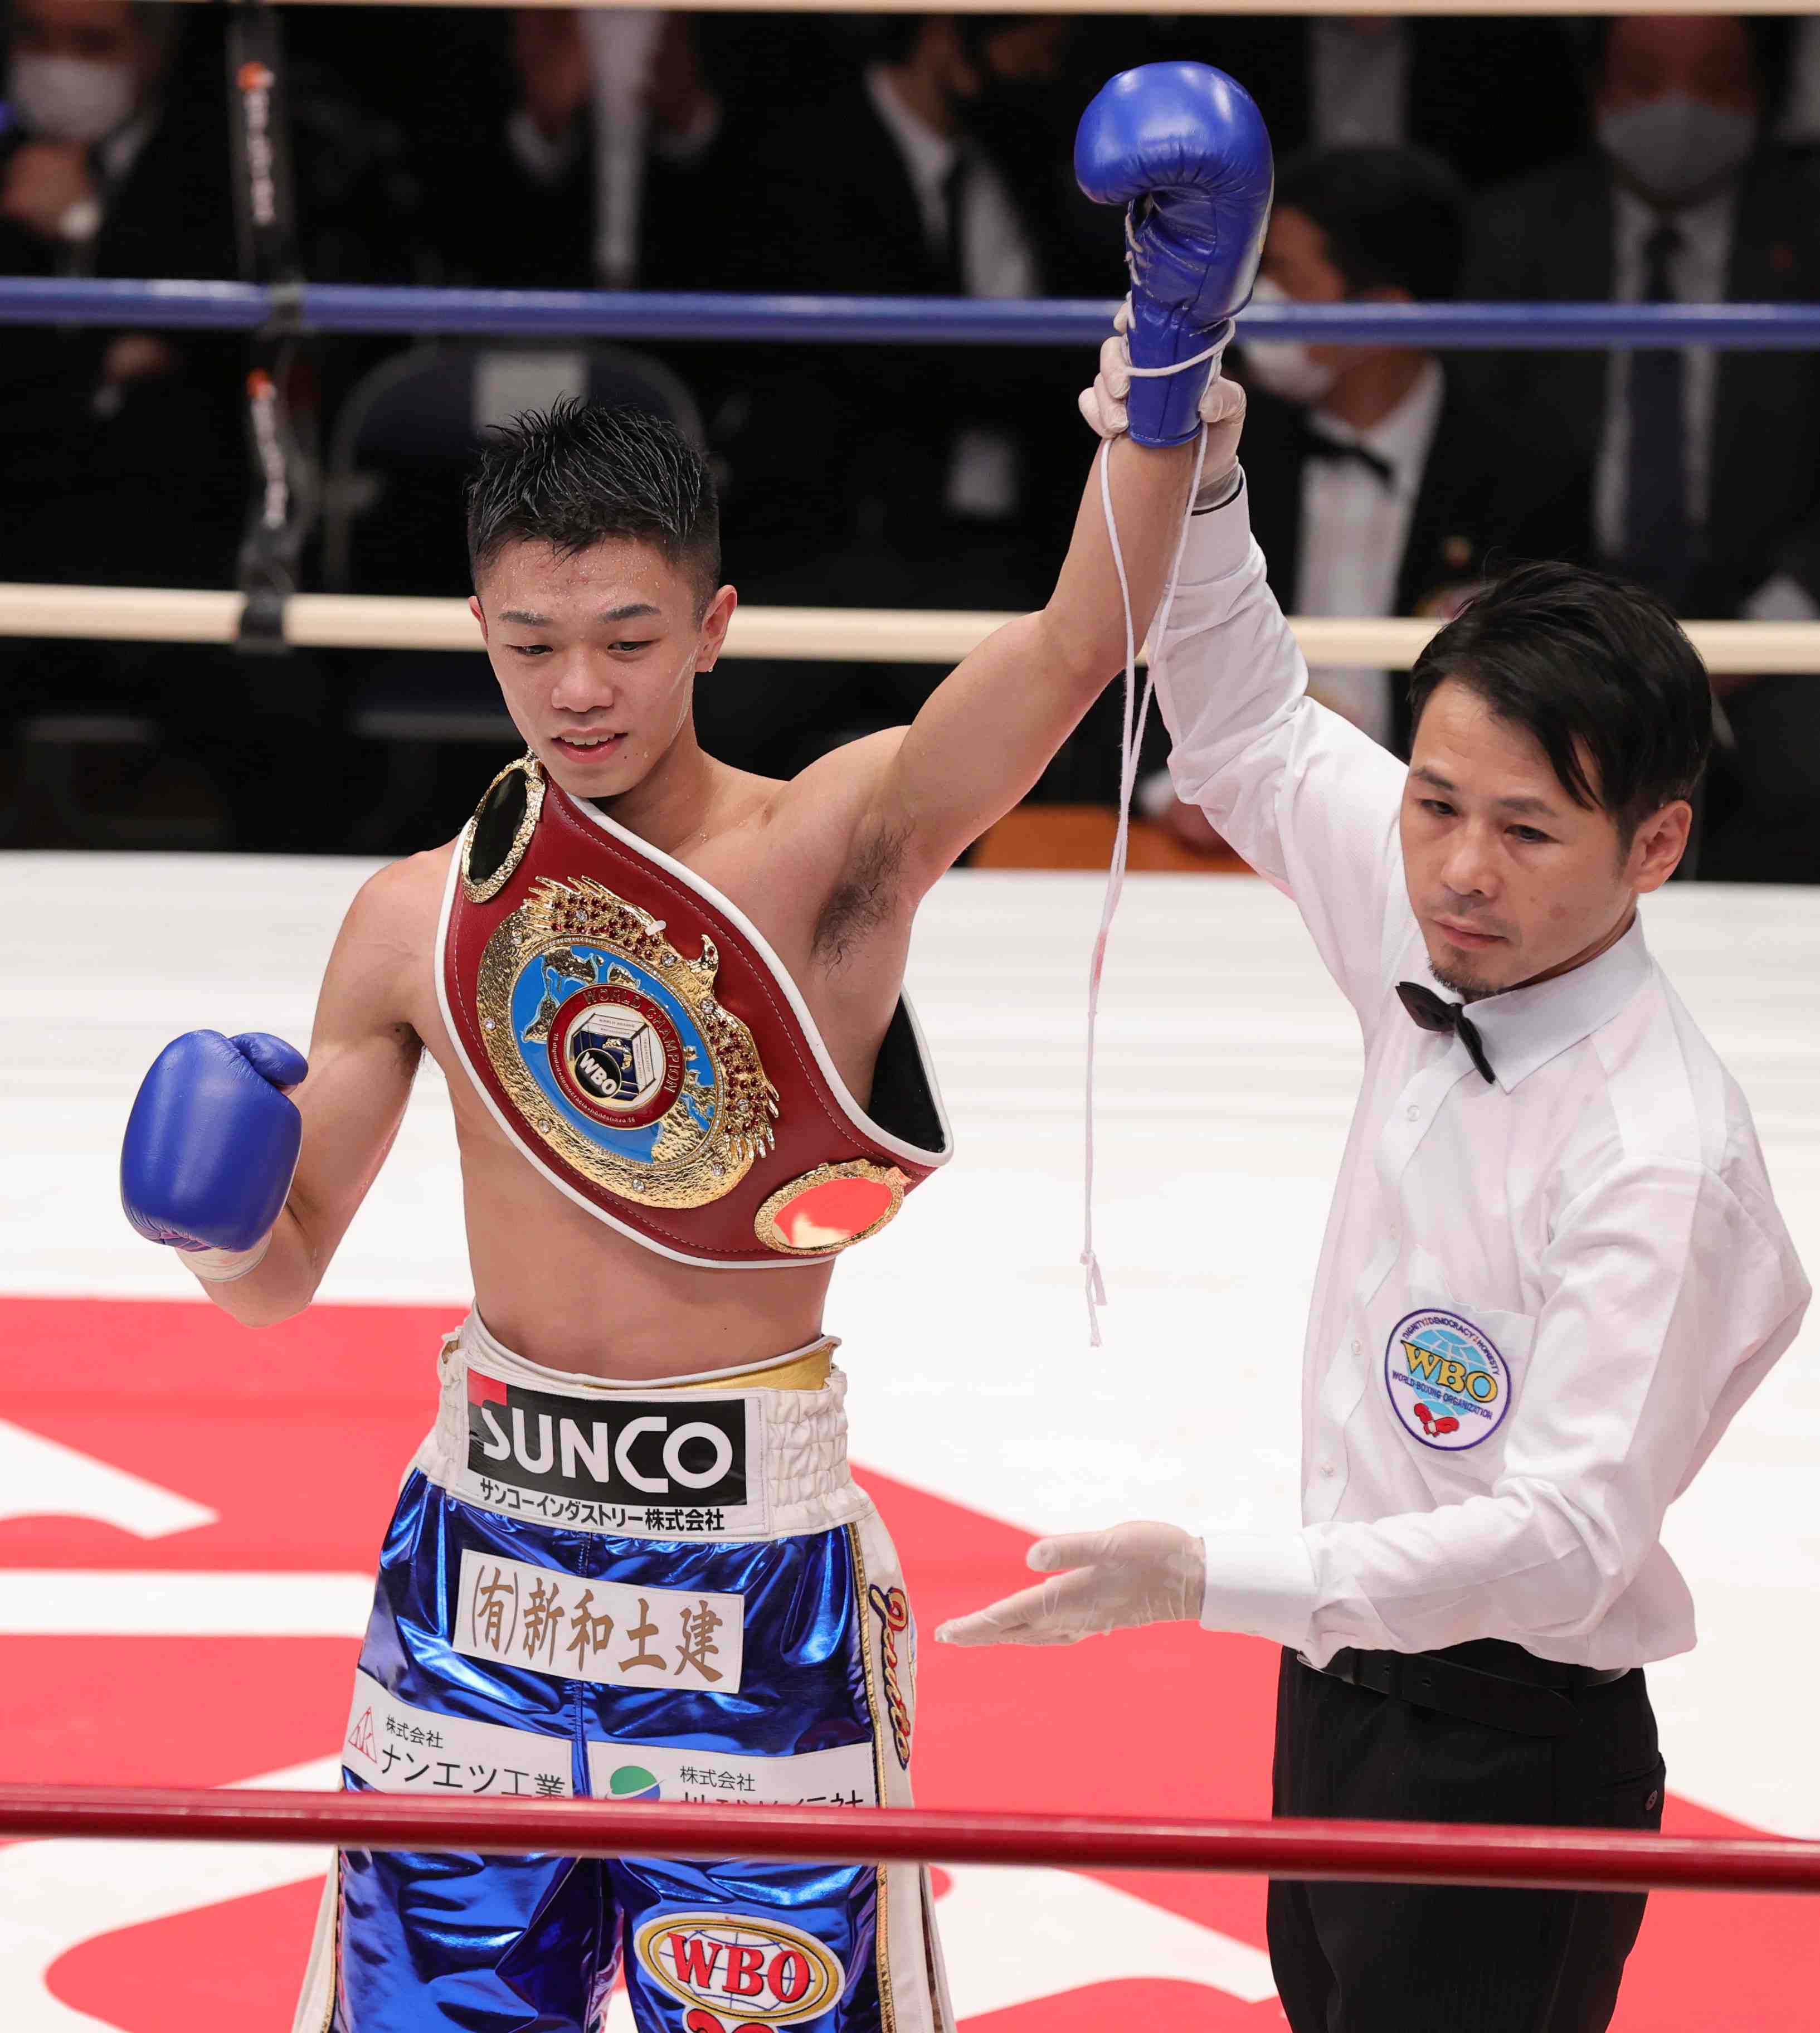 Boxer Junto Nakatani won the WBO flyweight title